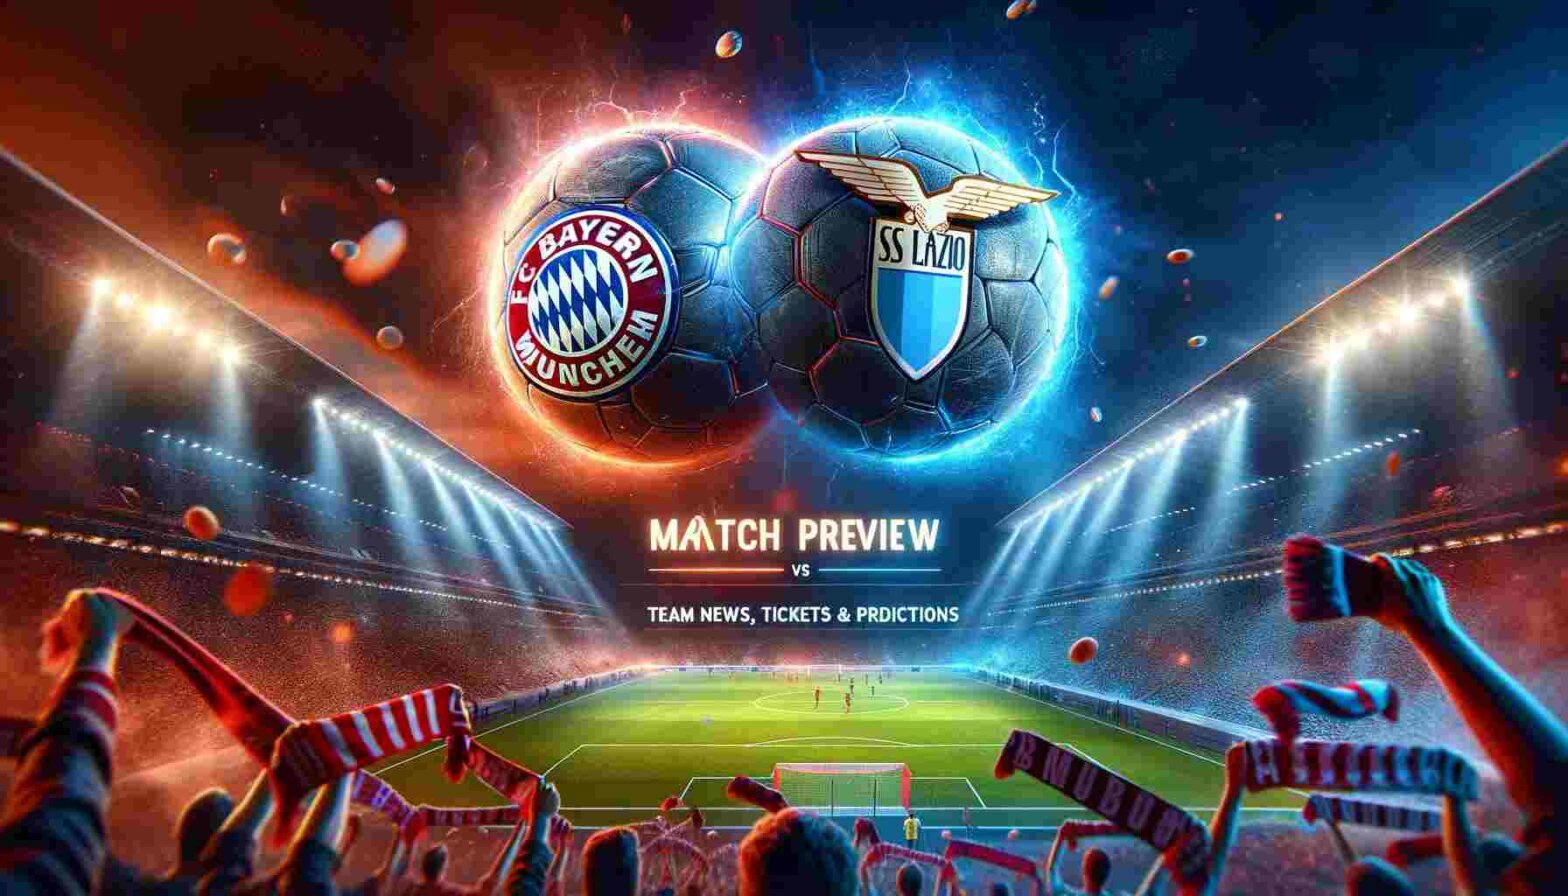 upcoming football match between FC Bayern Munich and SS Lazio